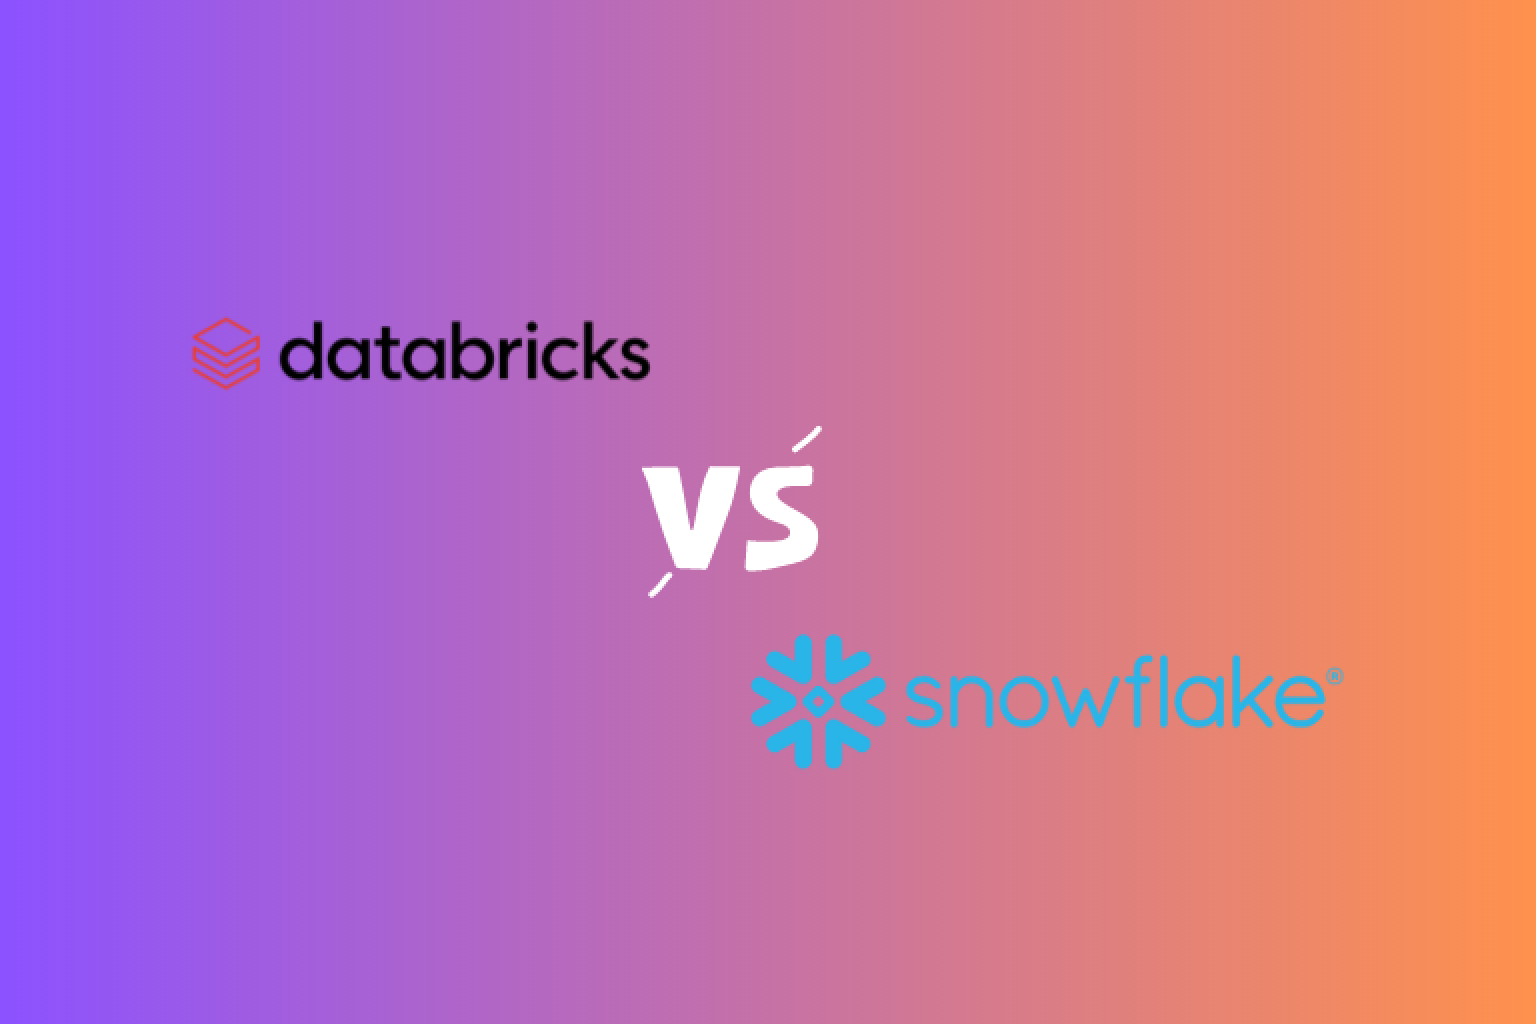 데이터브릭스와 스노우플레이크, 두 가지 주요 데이터 플랫폼의 주요 차이점을 알아보세요. 그들의 장점과 단점을 알아보고 당신의 요구에 맞는 적절한 툴을 찾아보세요.